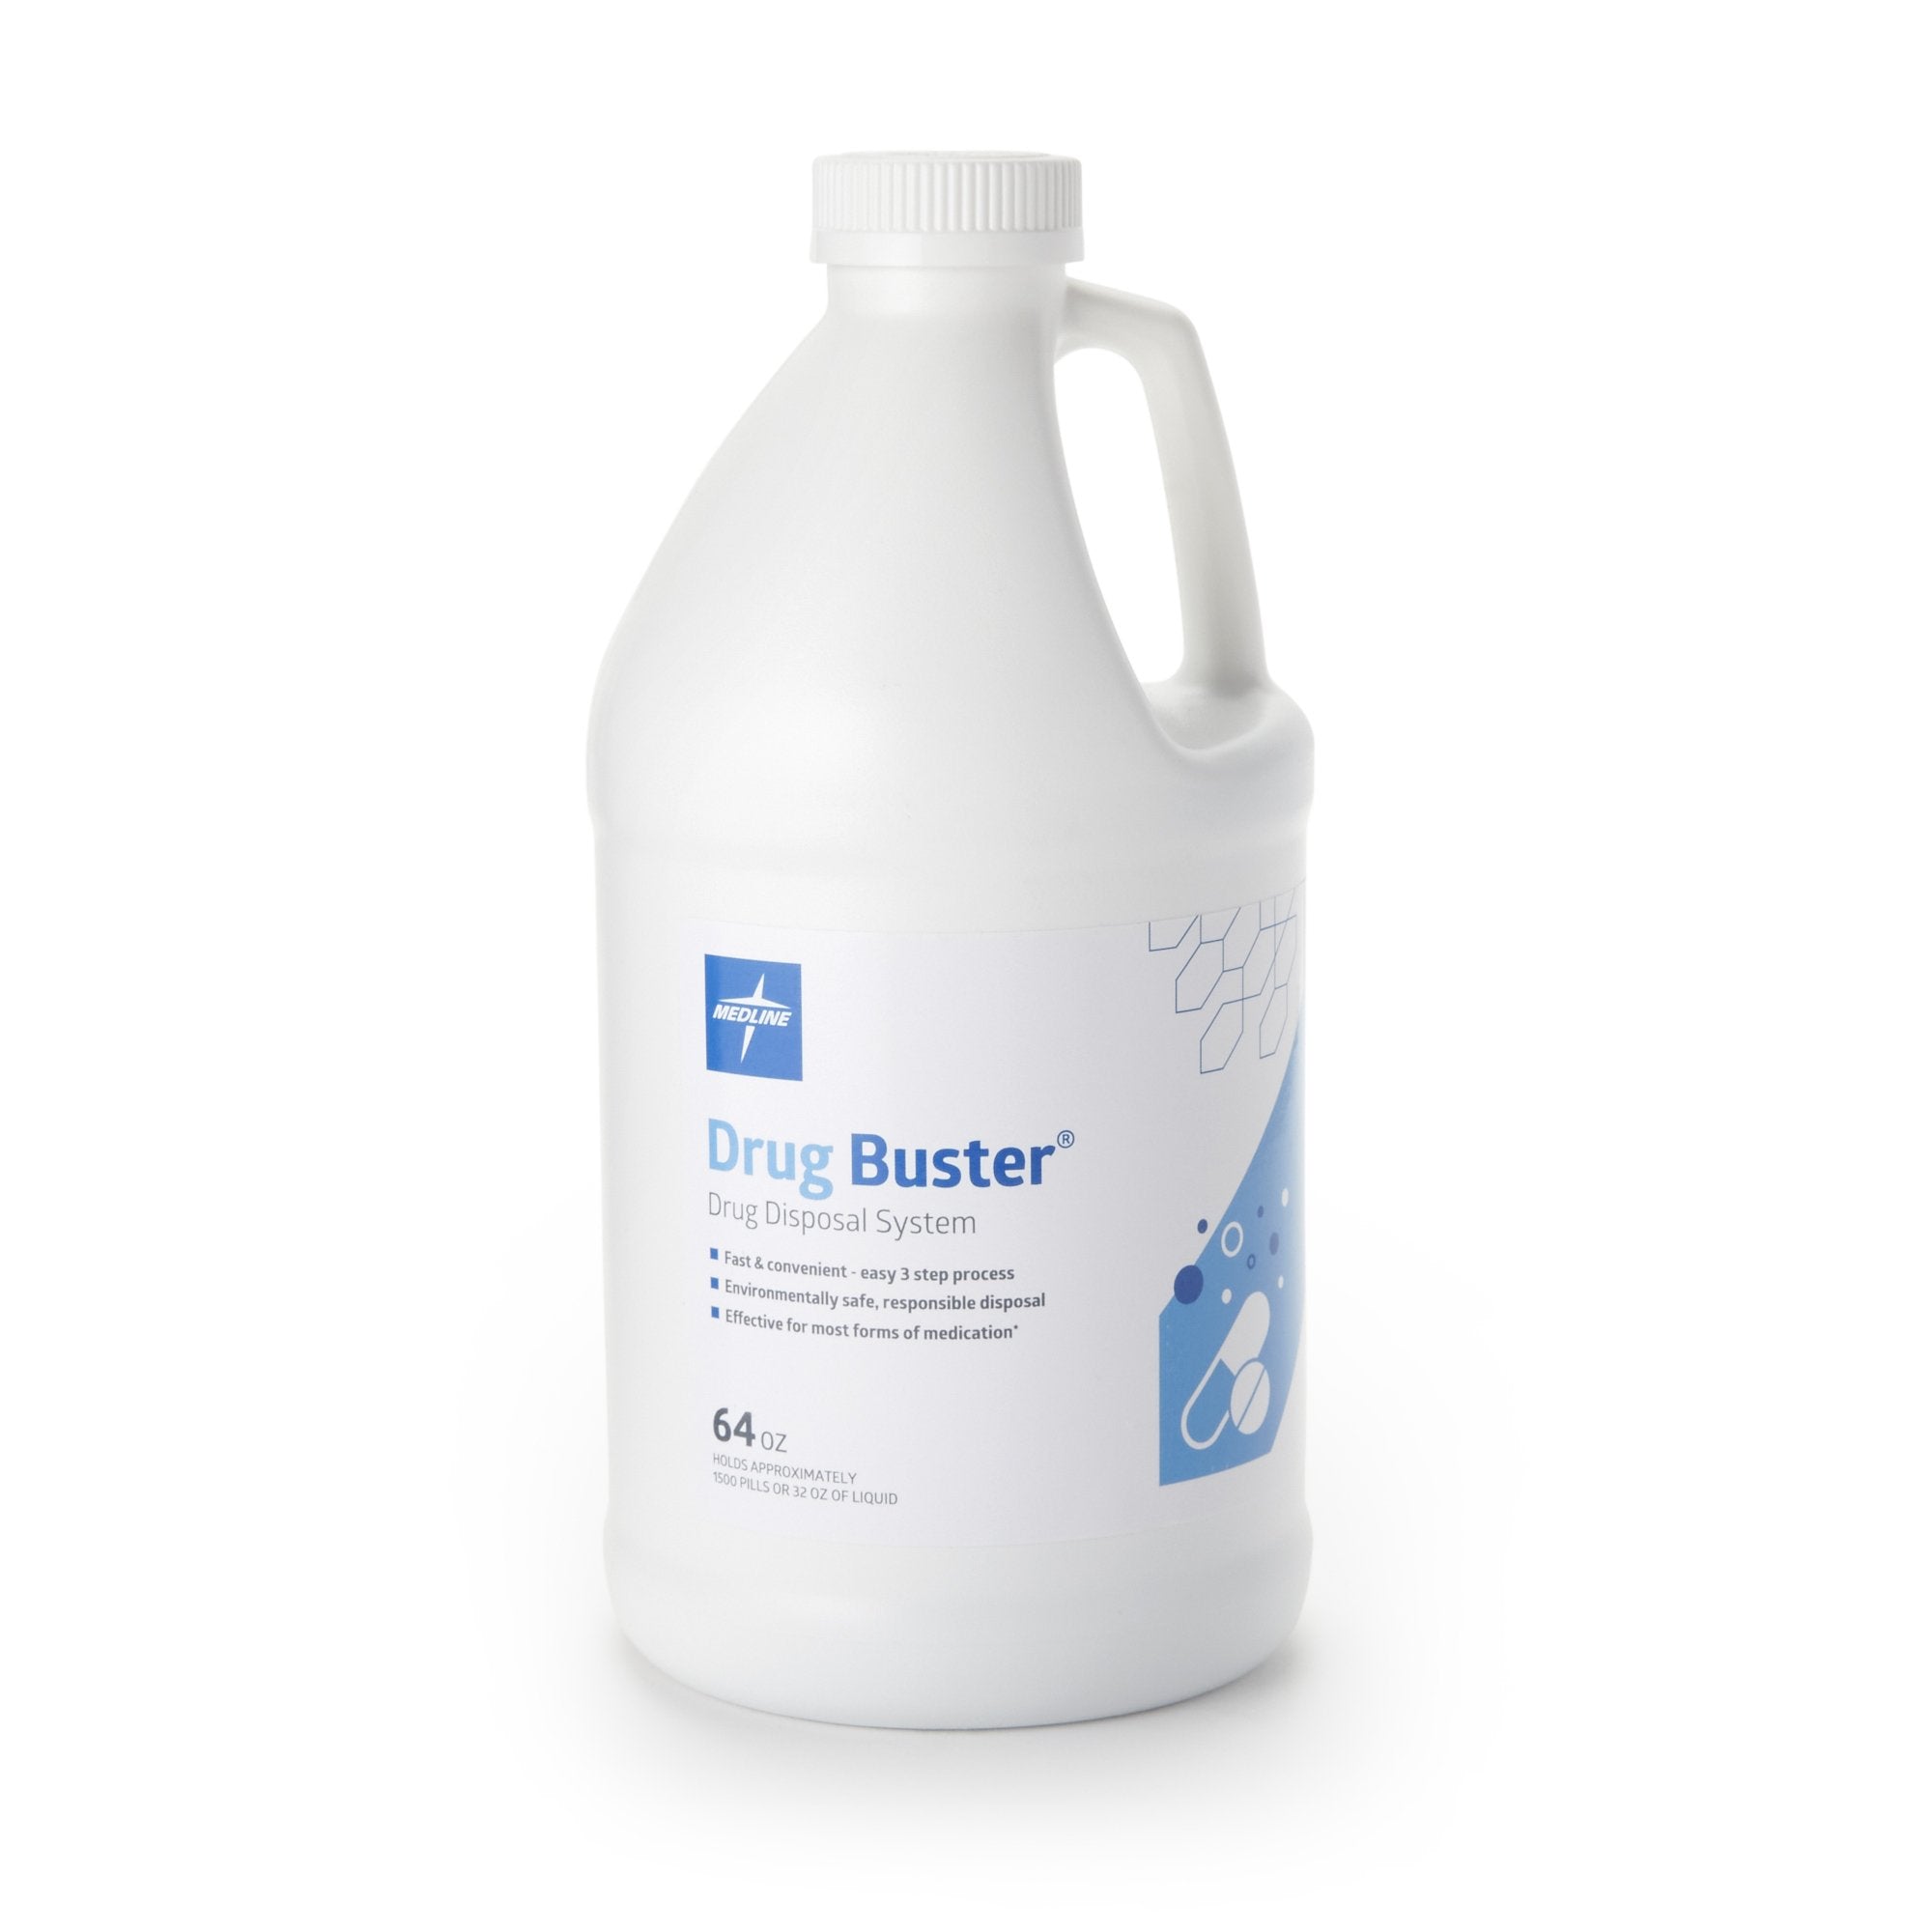 Drug Disposal Solution Drug Buster System Liquid, 64 oz.